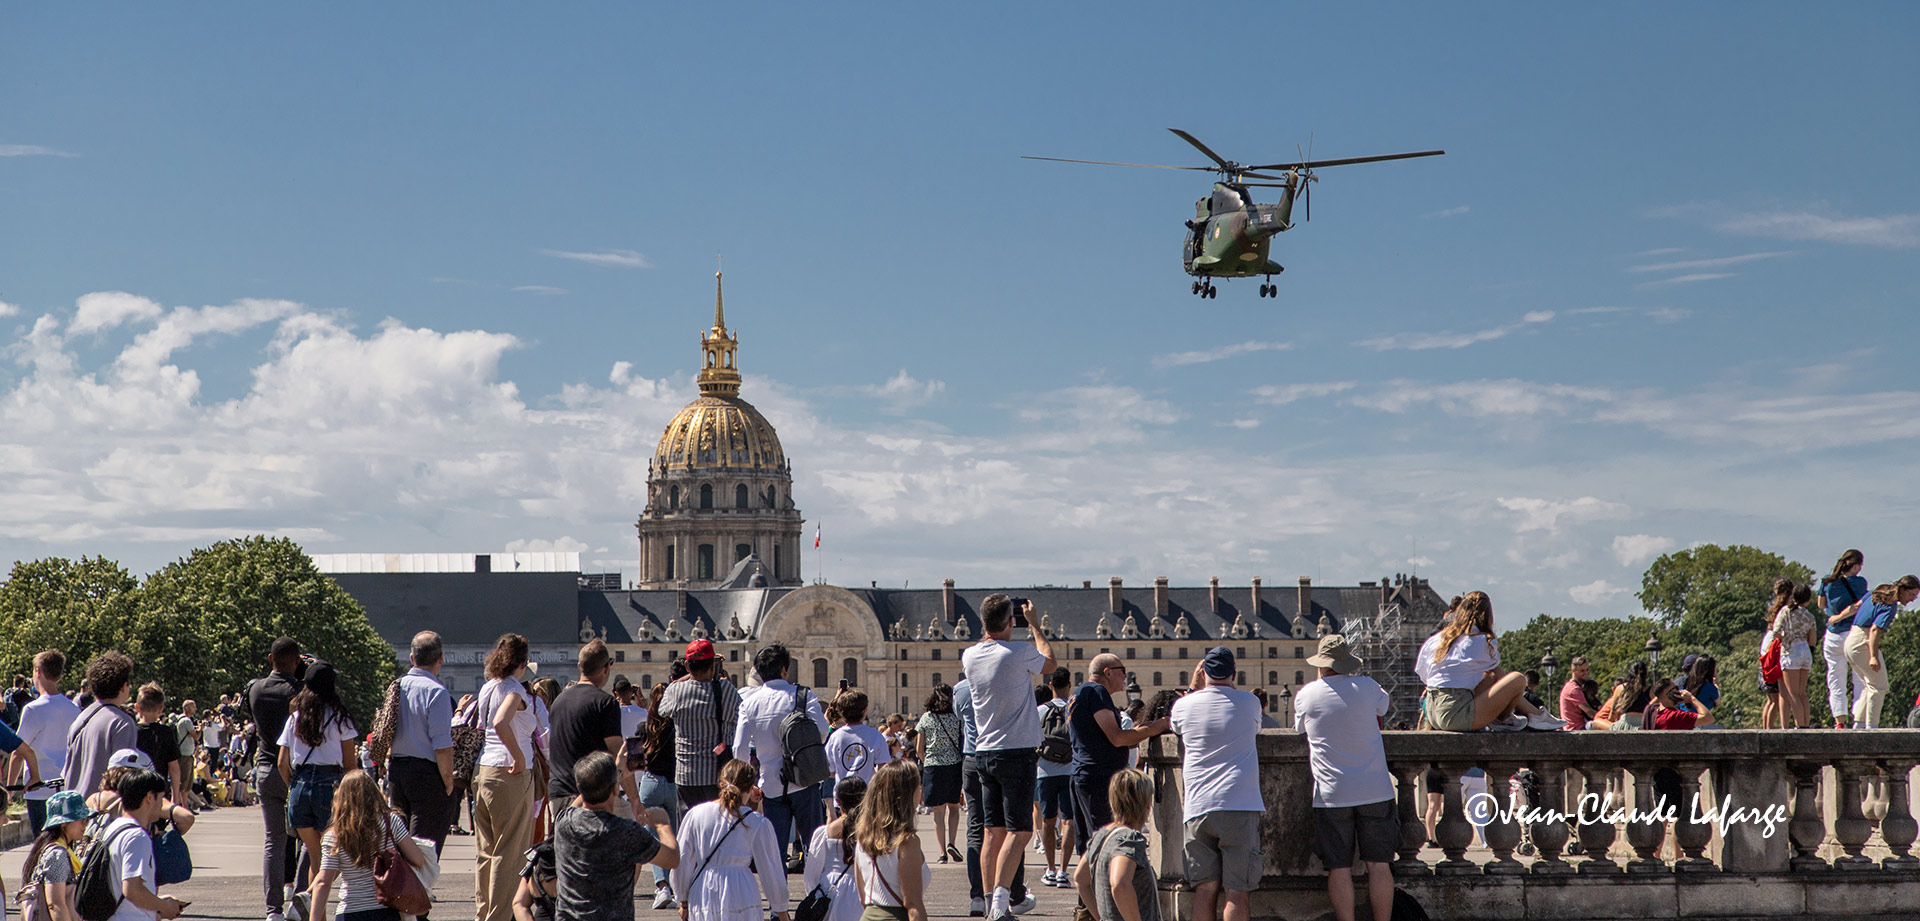 L'Hélicoptère va rejoindre ses confrères pour l'exposition de l'après-midi sur l'Esplanade des Invalides à Paris .